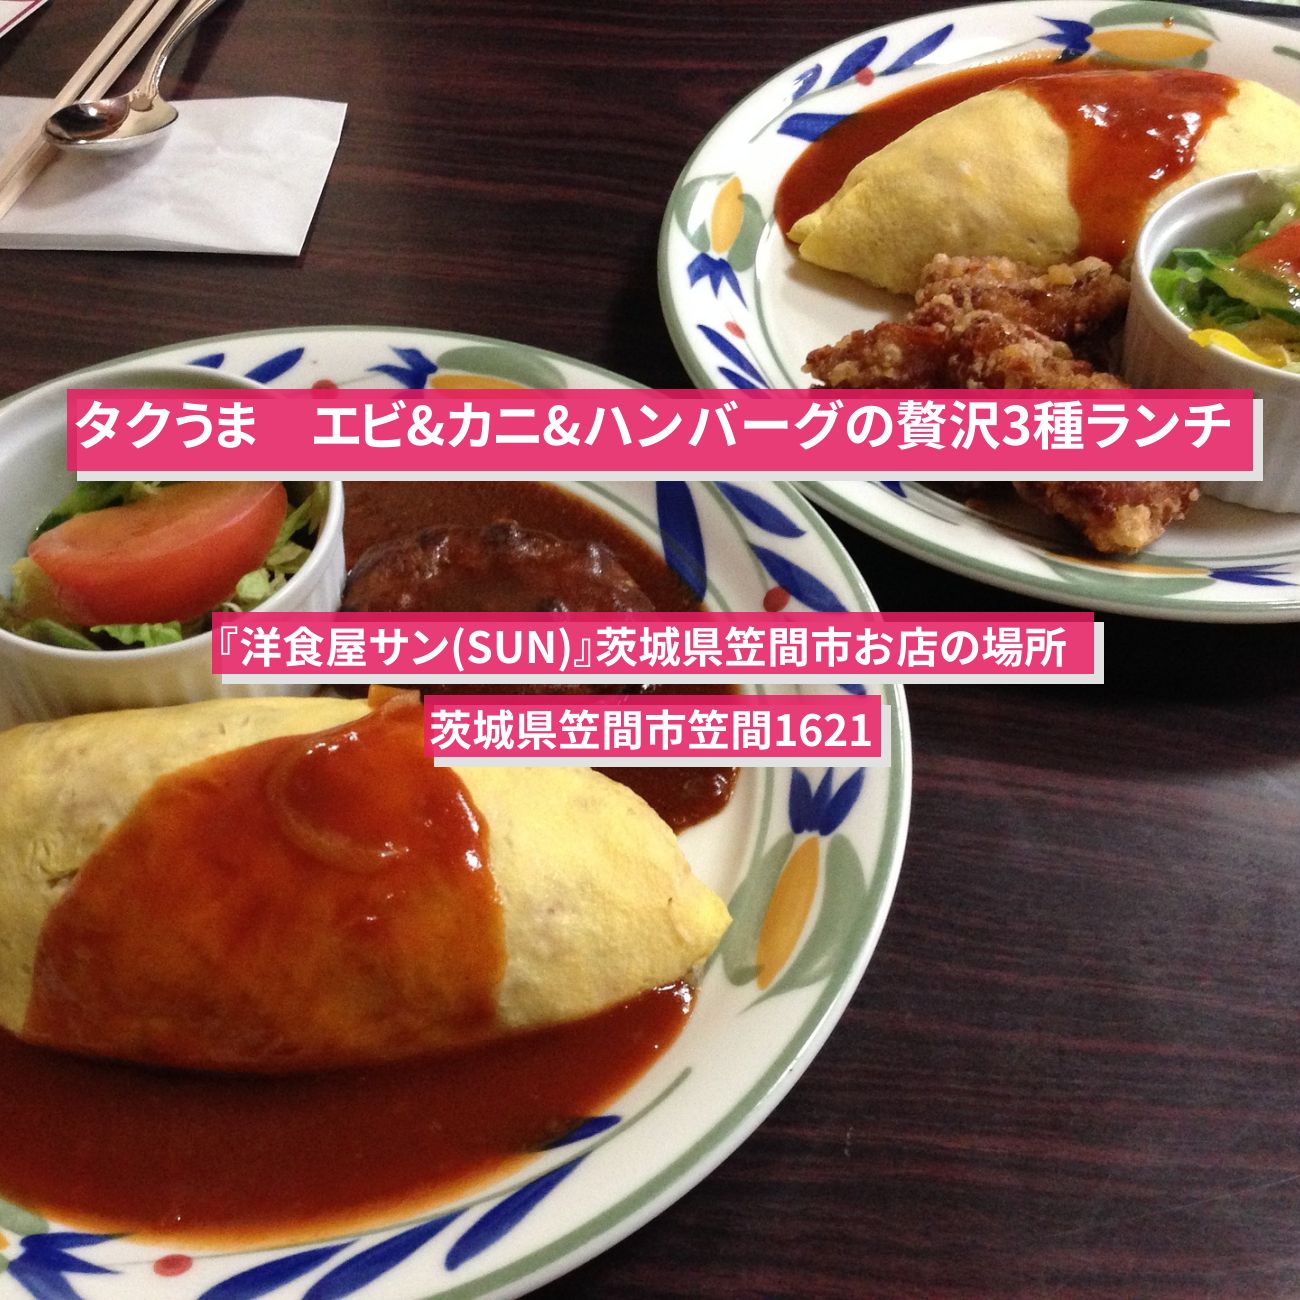 【タクうま】エビ&カニ&ハンバーグの贅沢3種ランチ『洋食屋サン(SUN)』茨城県笠間市のお店の場所  〔タクシー運転手さん一番うまい店に連れてって〕